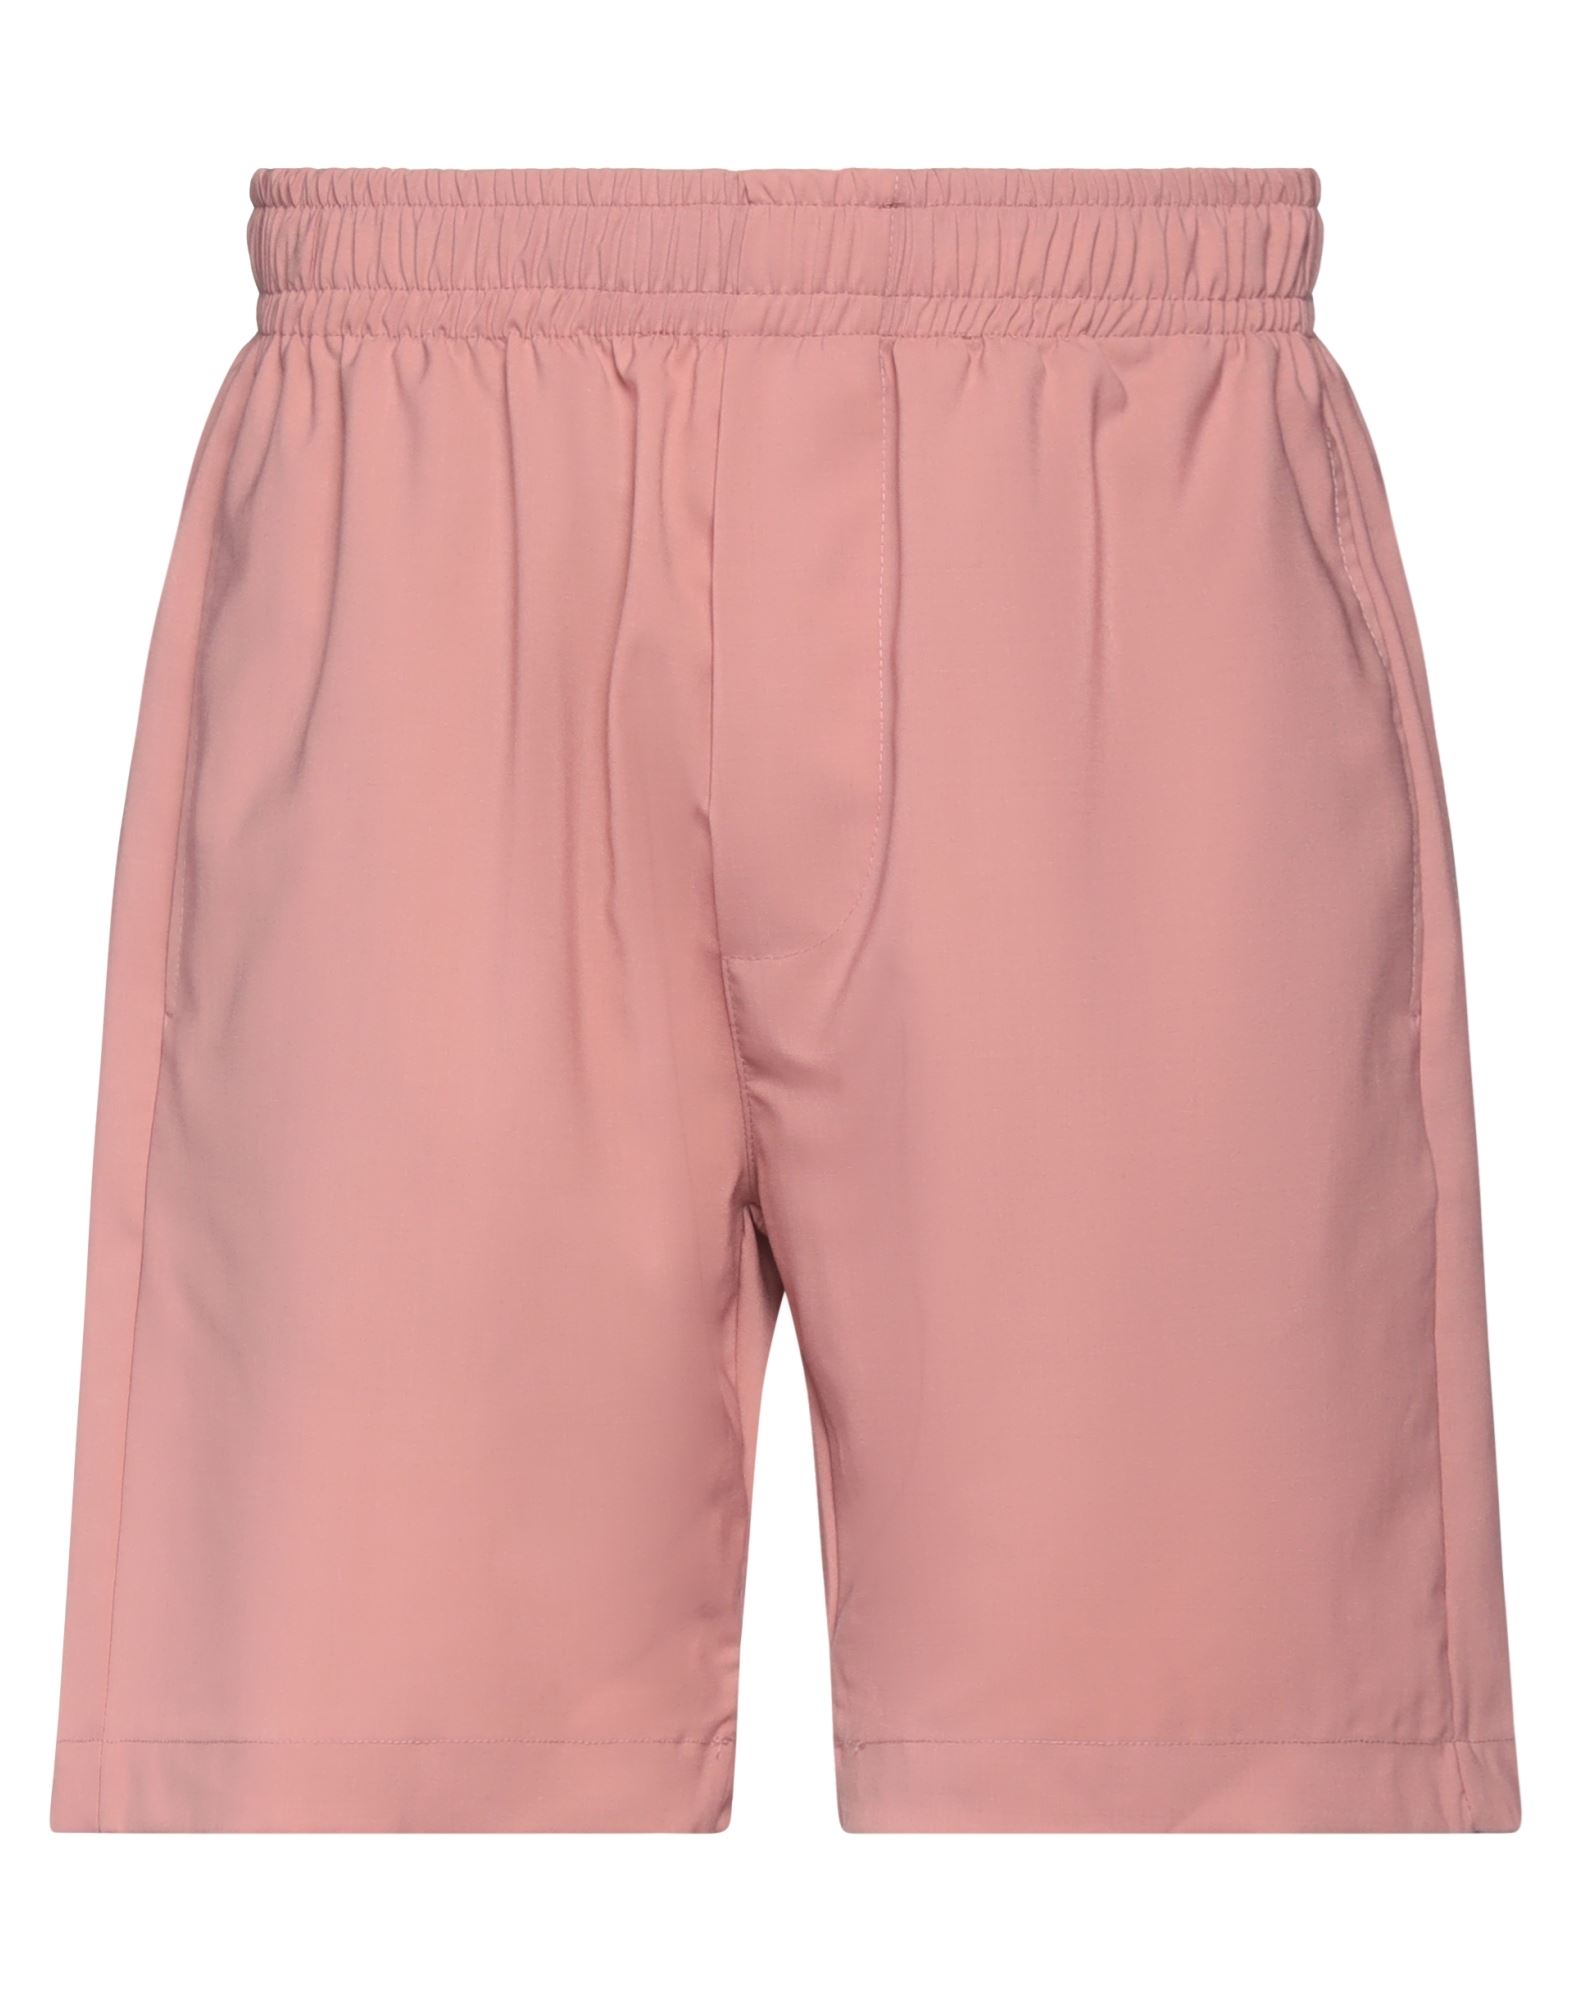 Yes London Man Shorts & Bermuda Shorts Pink Size Xl Virgin Wool, Polyester, Elastane